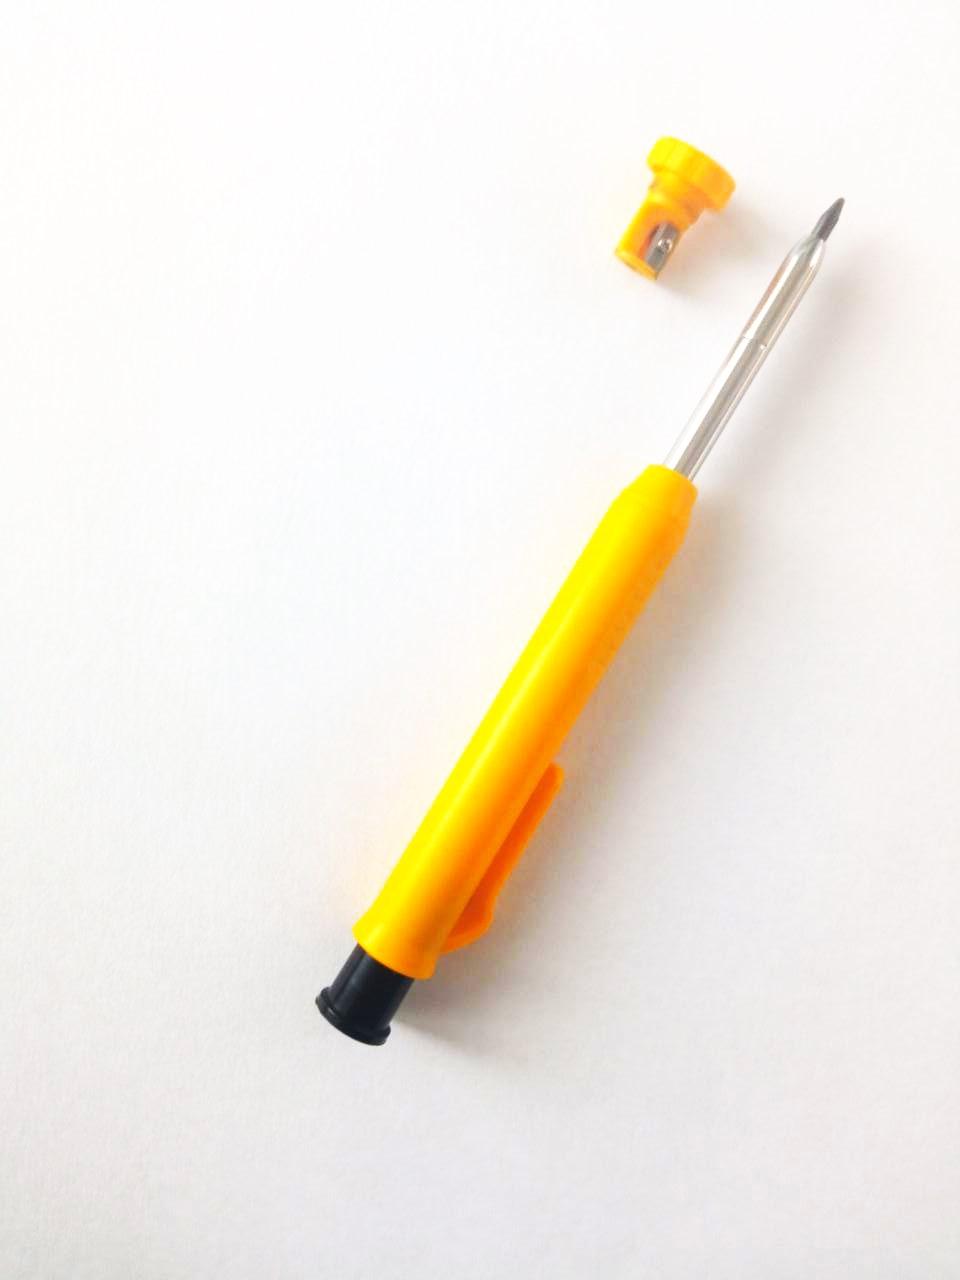 Строительный карандаш с колпачком, точилкой и дополнительном комплектом из 6 стержней